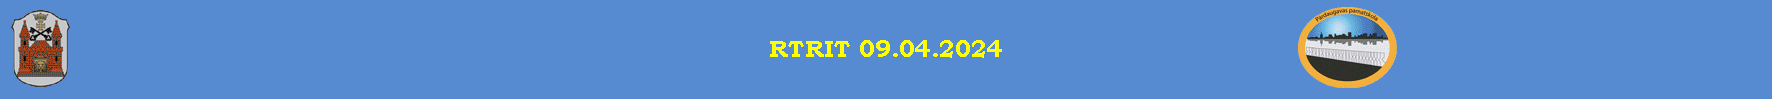 RTRIT 09.04.2024